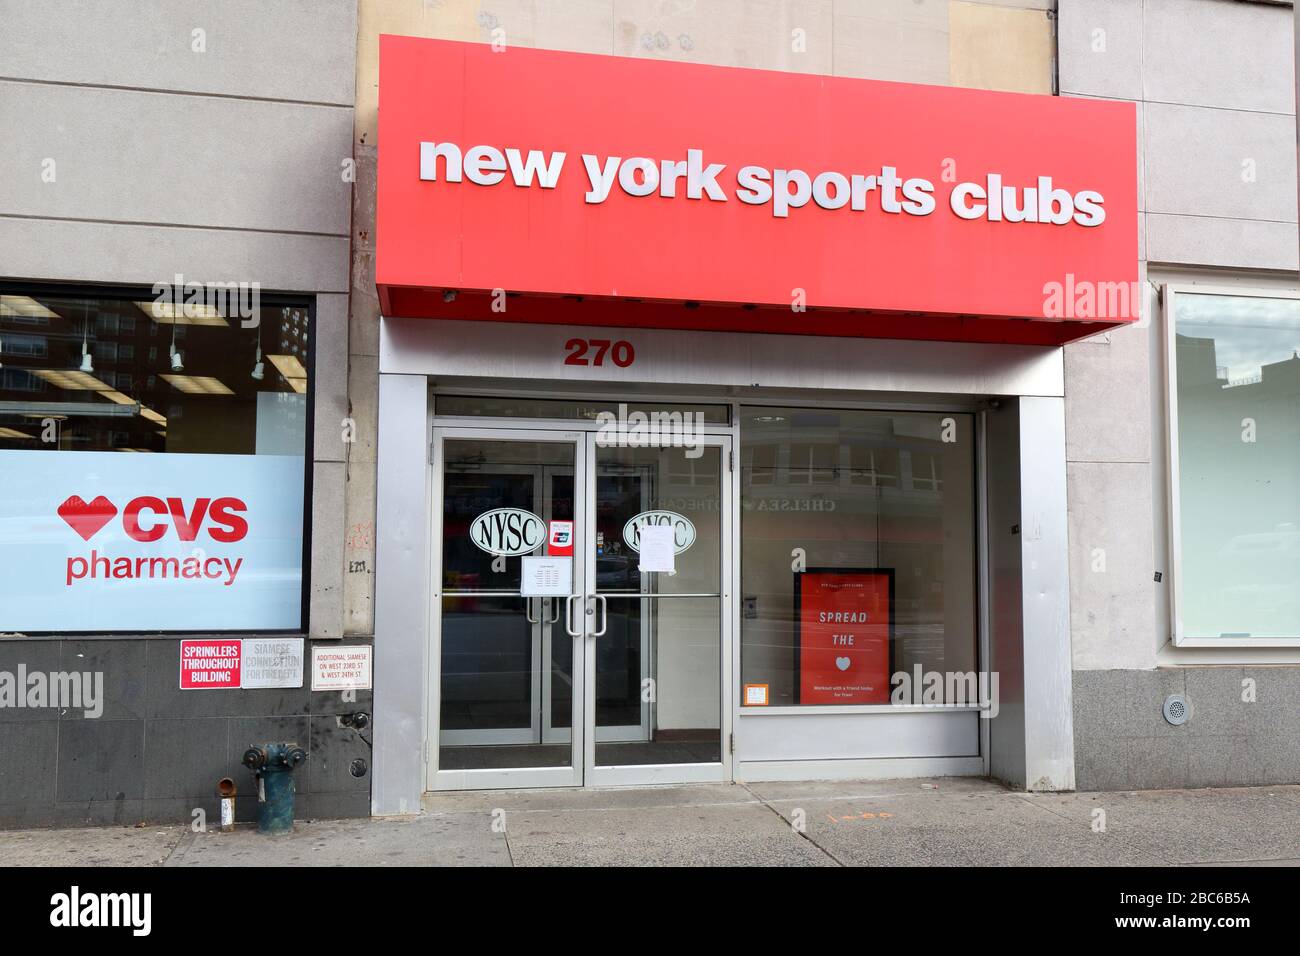 New York Sports Clubs, 270 8th Ave, New York, NYC boutique photo d'une salle de gym dans le quartier Chelsea de Manhattan. Banque D'Images